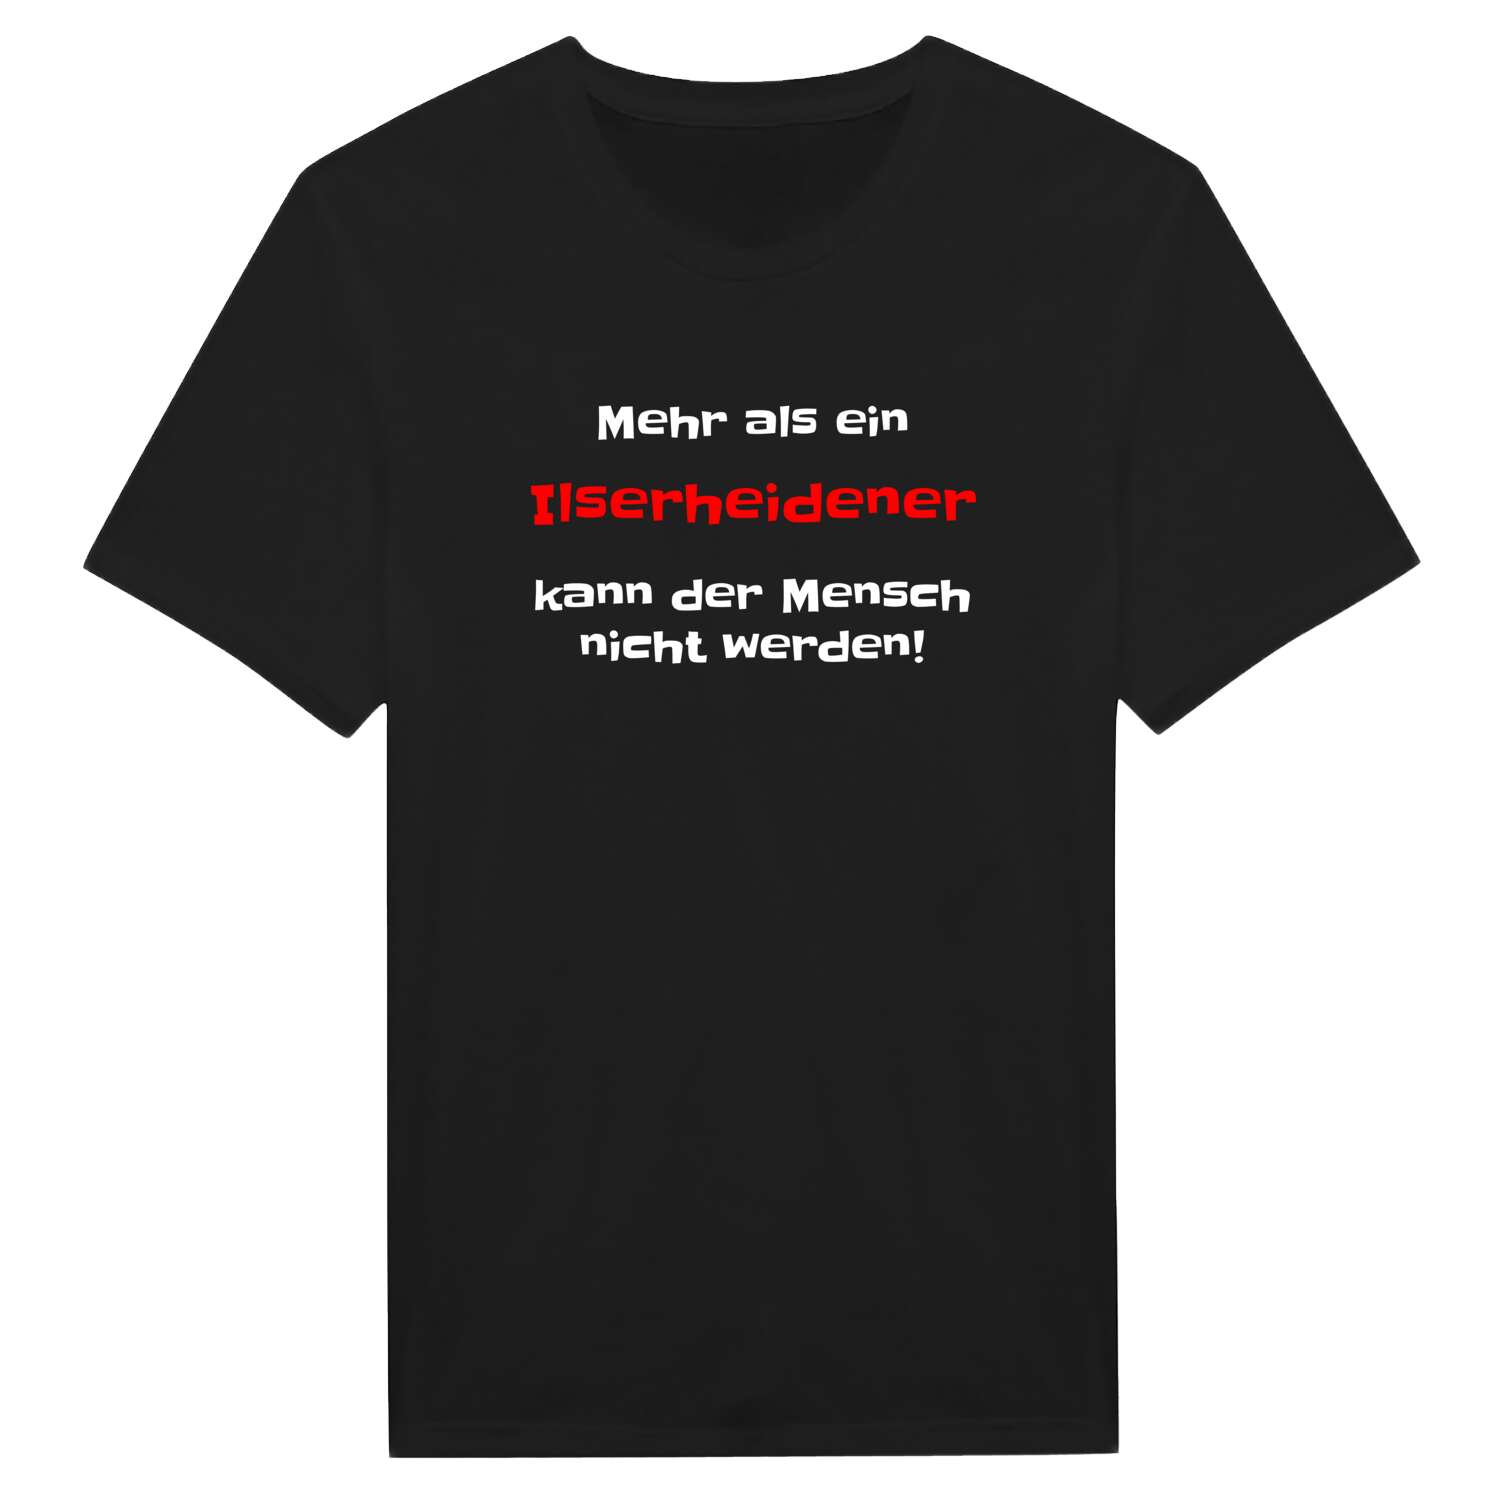 Ilserheide T-Shirt »Mehr als ein«